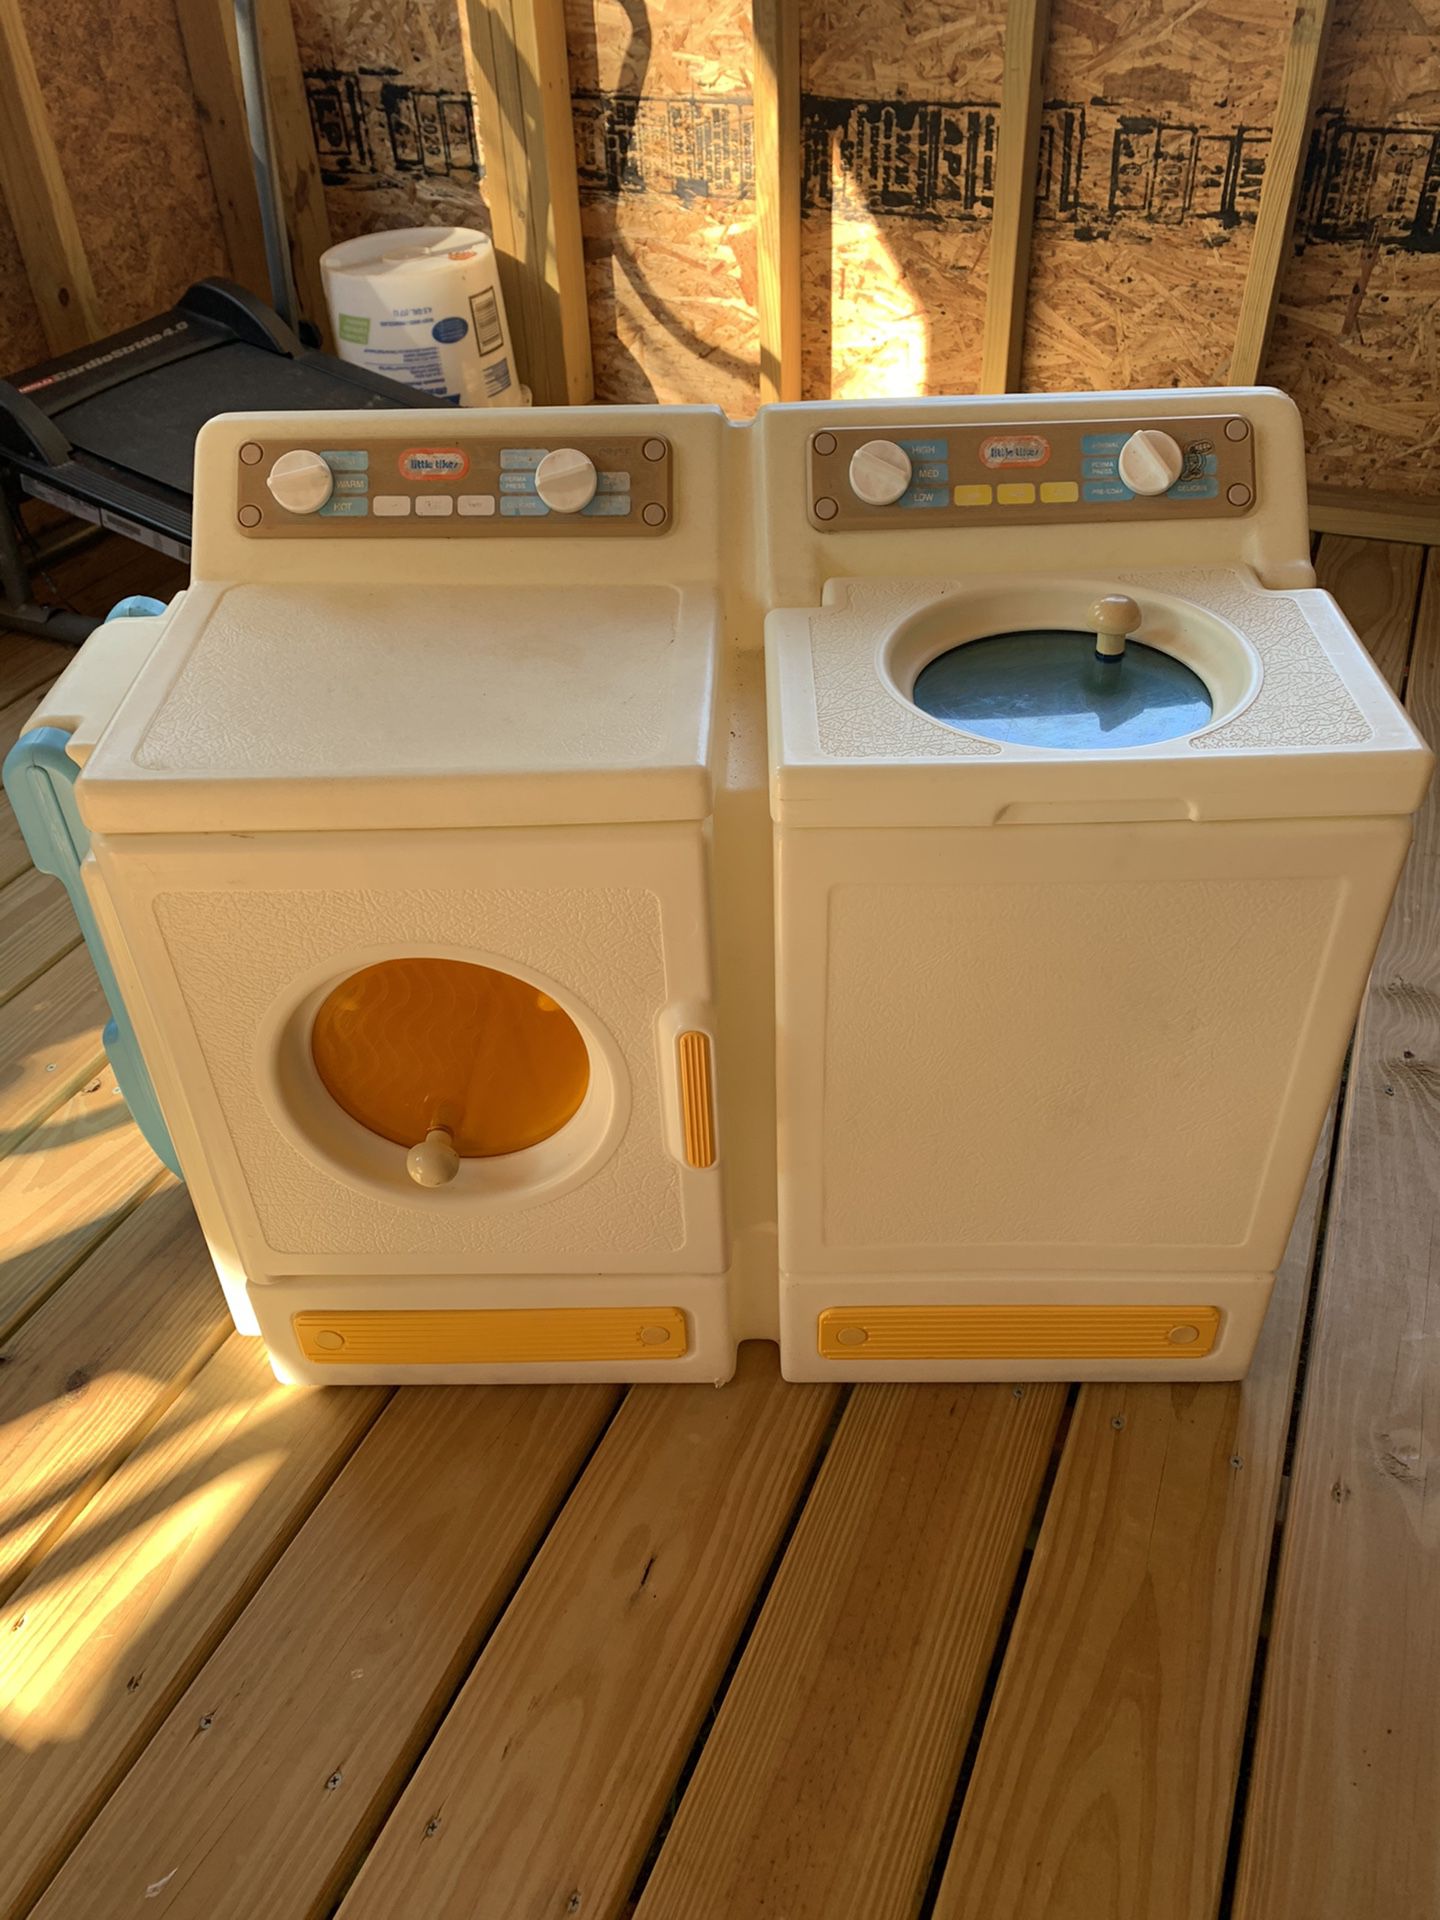 Toy laundry set